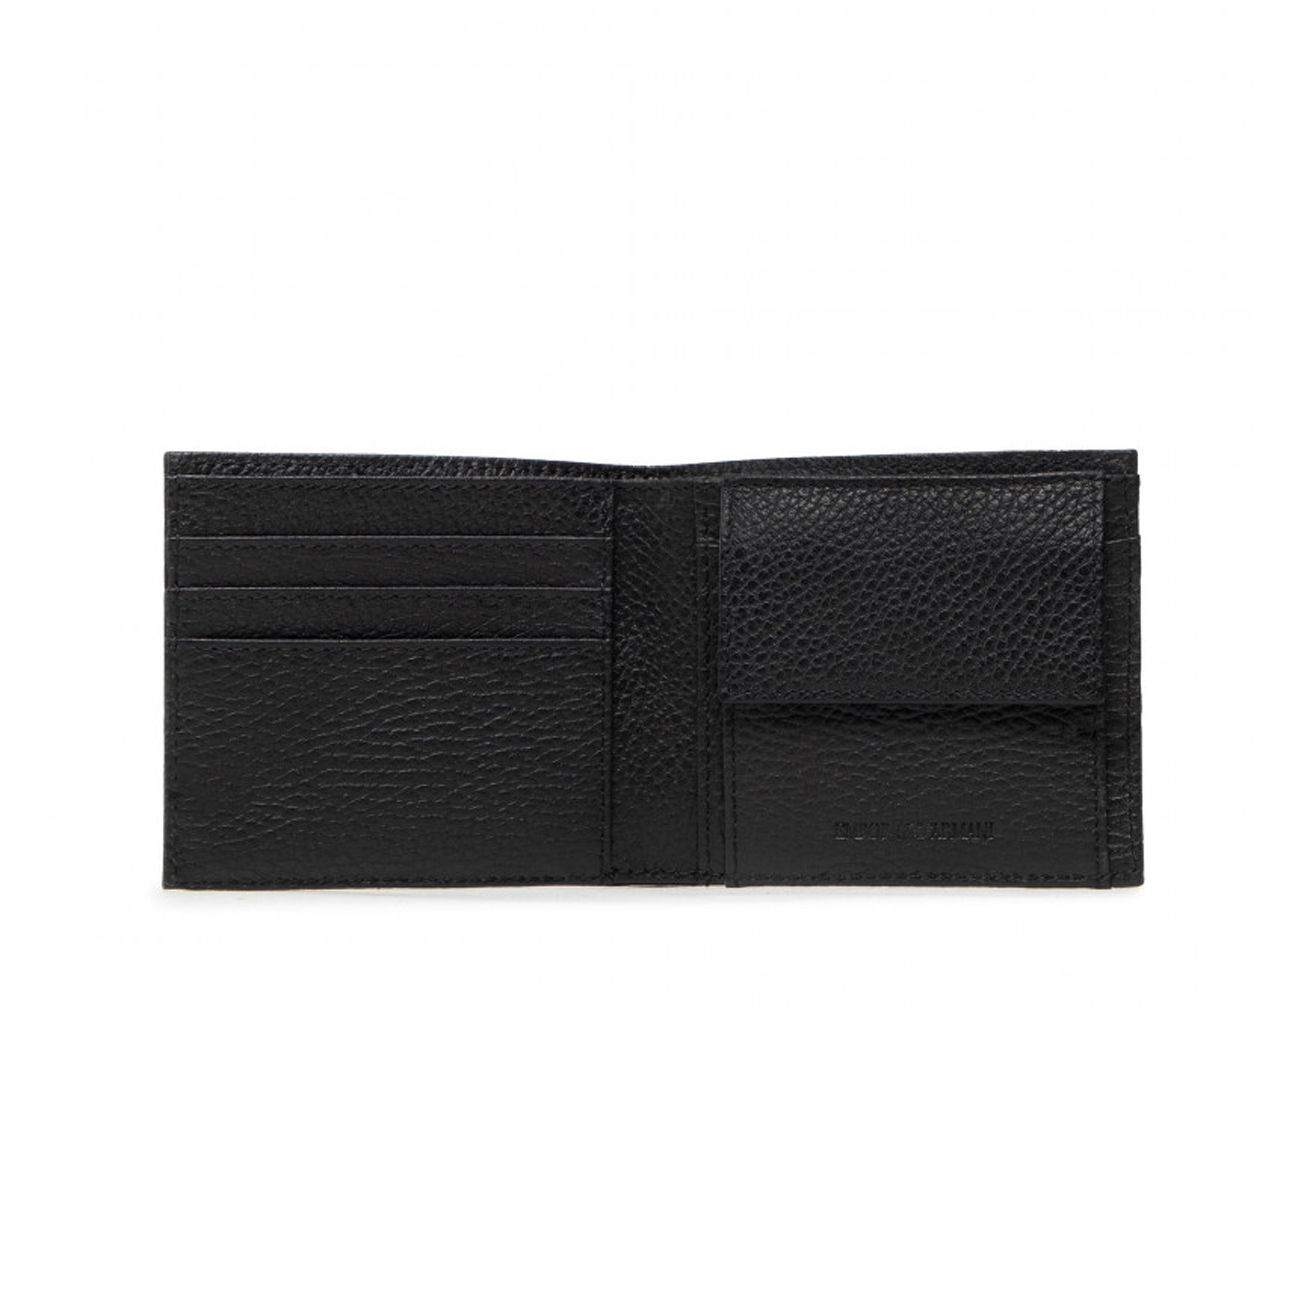 Wallets & purses Emporio Armani - Man`s credit card holder -  Y4R262Y730E84072